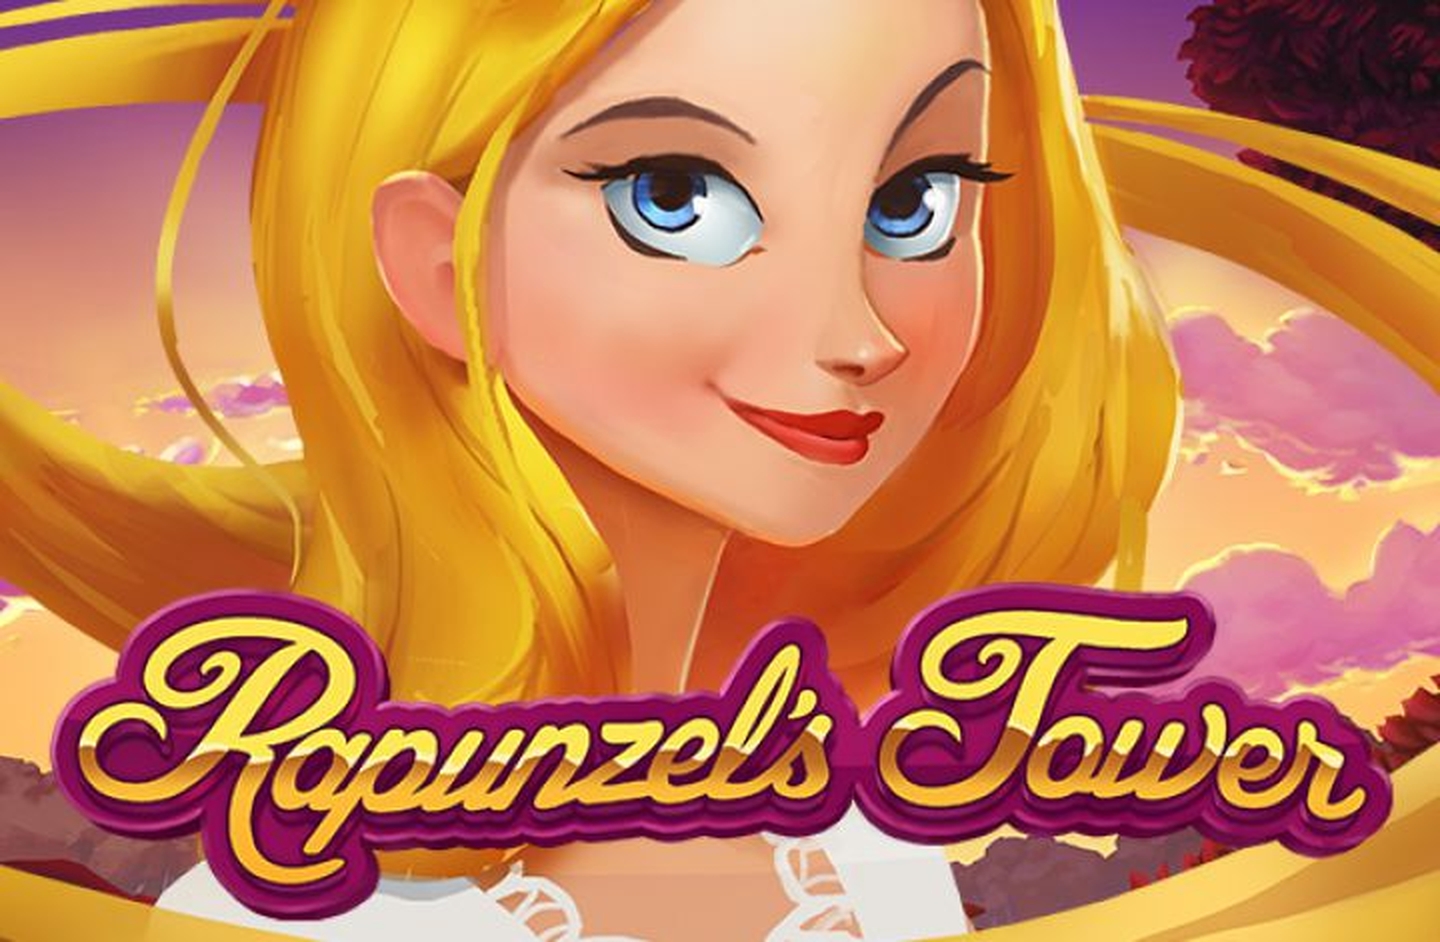 Rapunzel's Tower demo